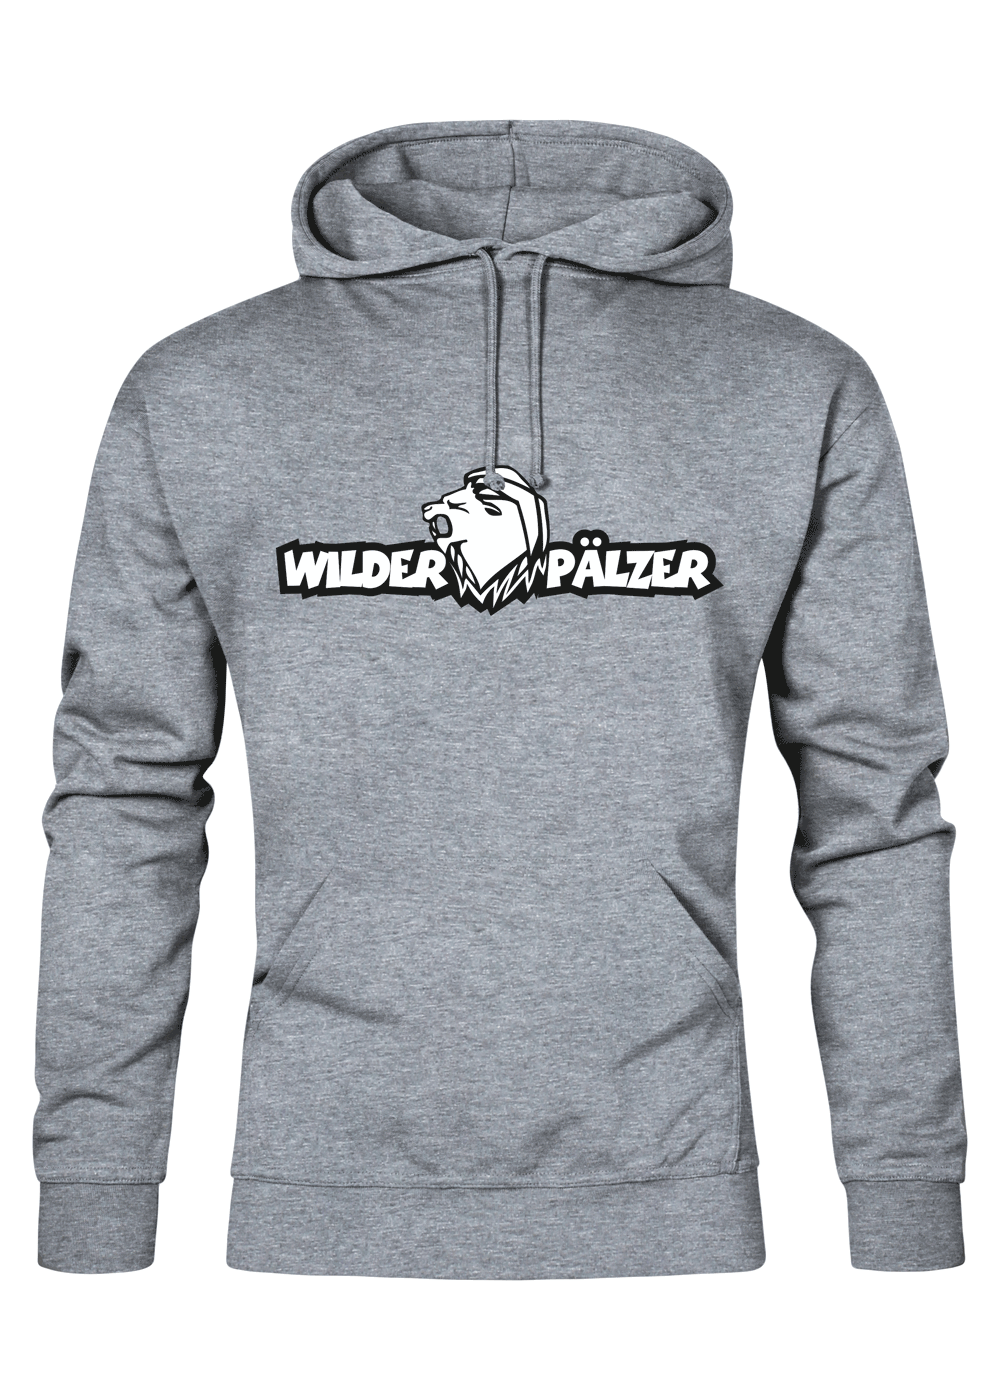 Wilder Pälzer - Männer Hoodie - Unisex